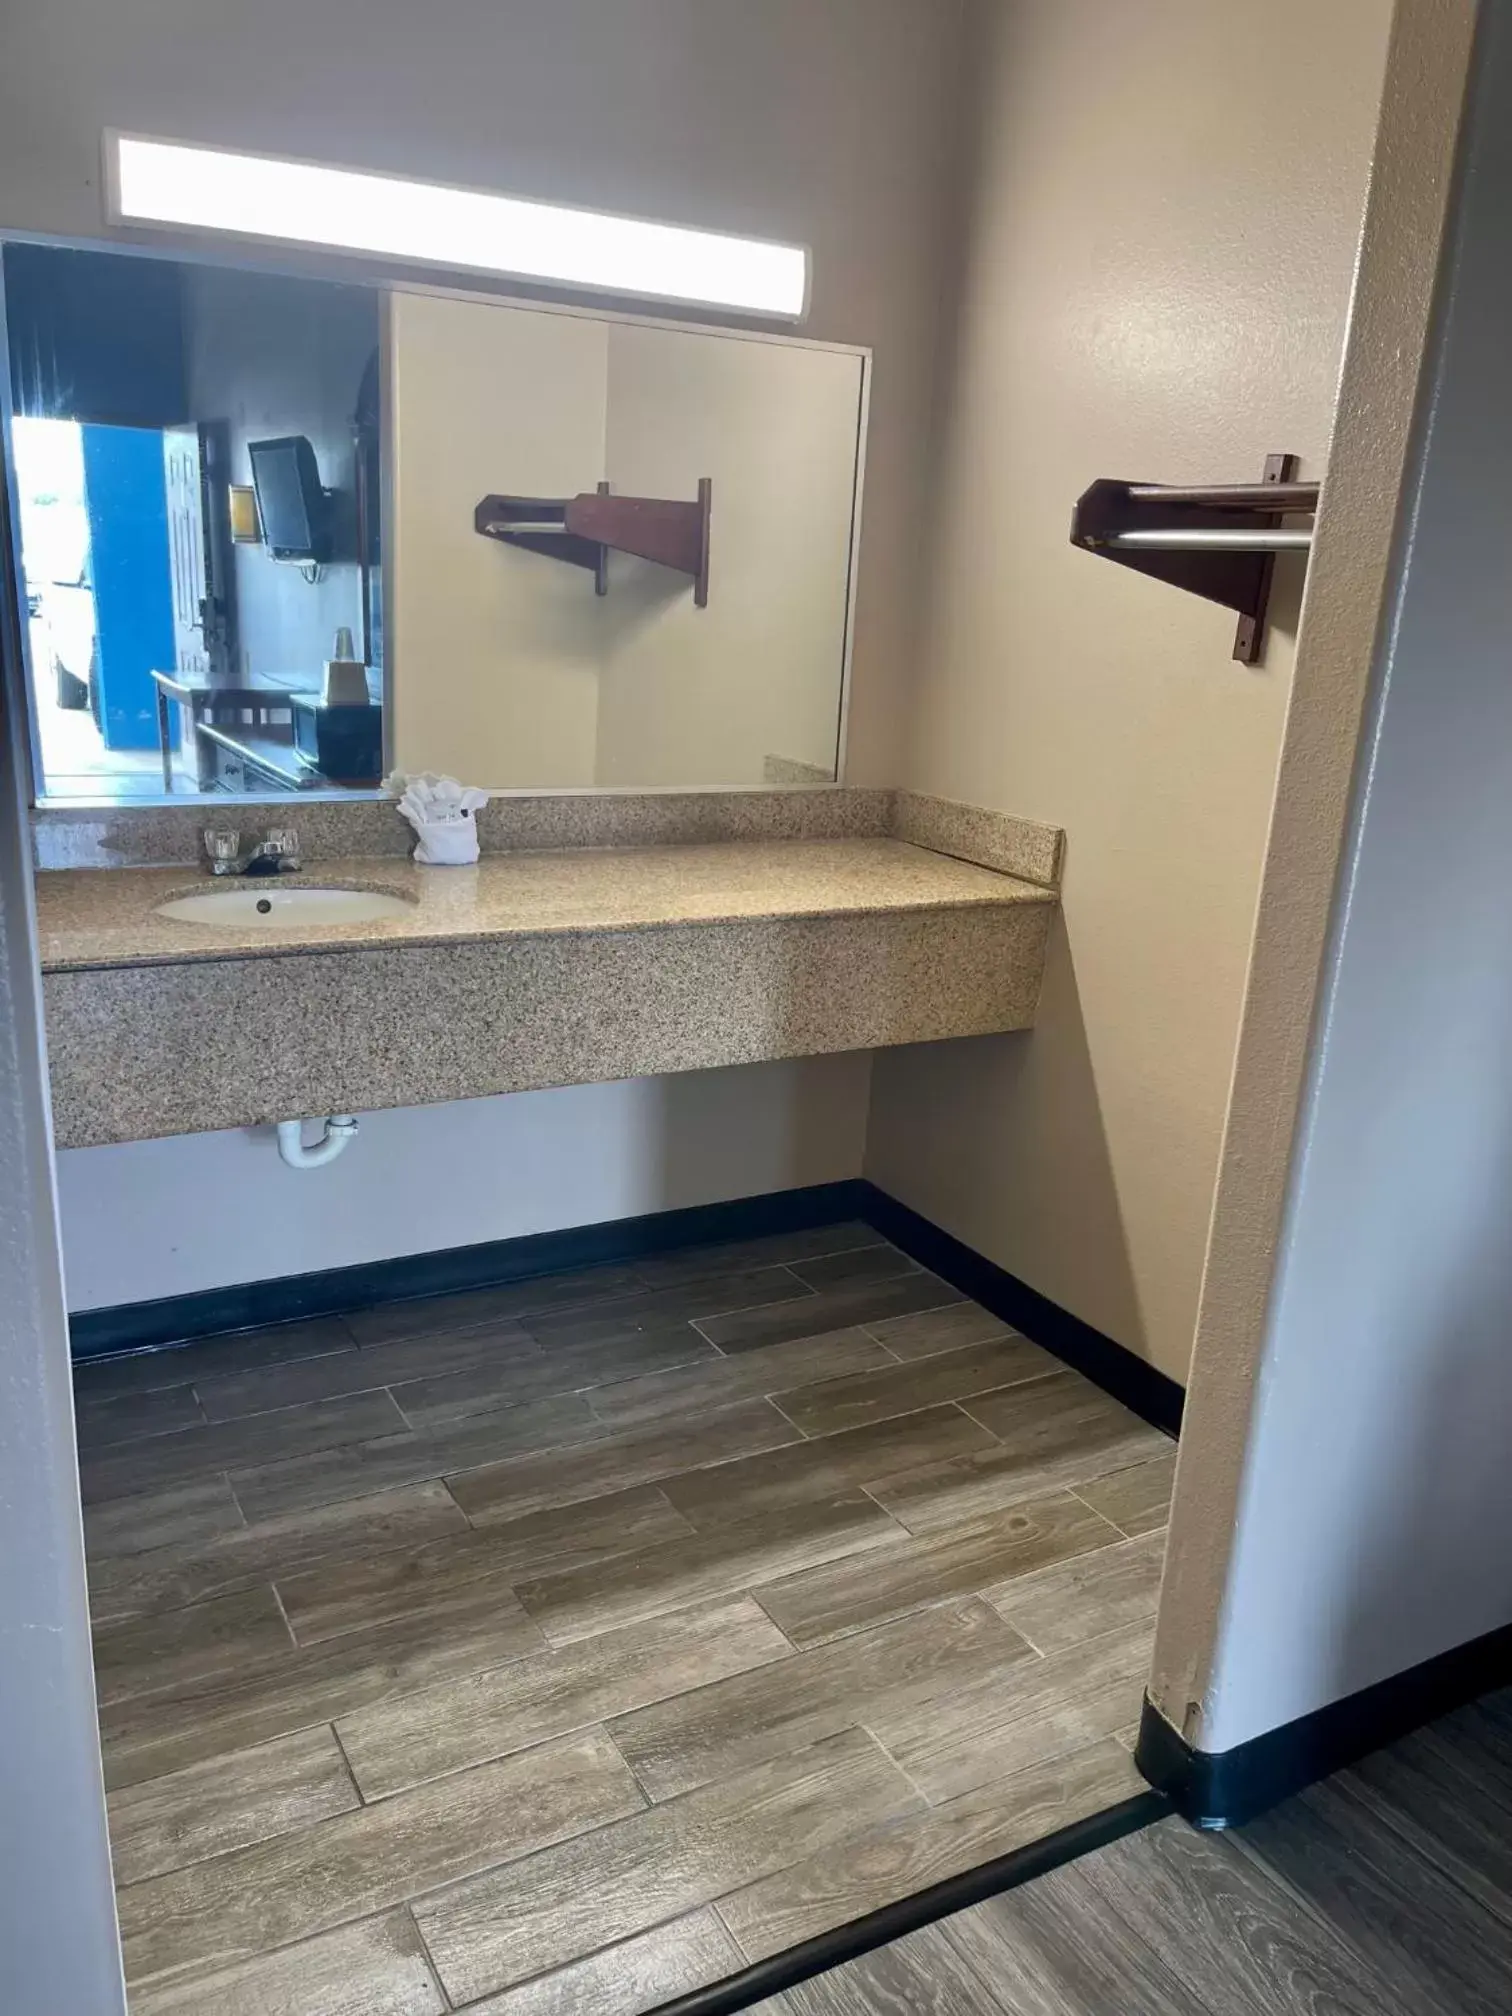 Bathroom in Airport inn & suites